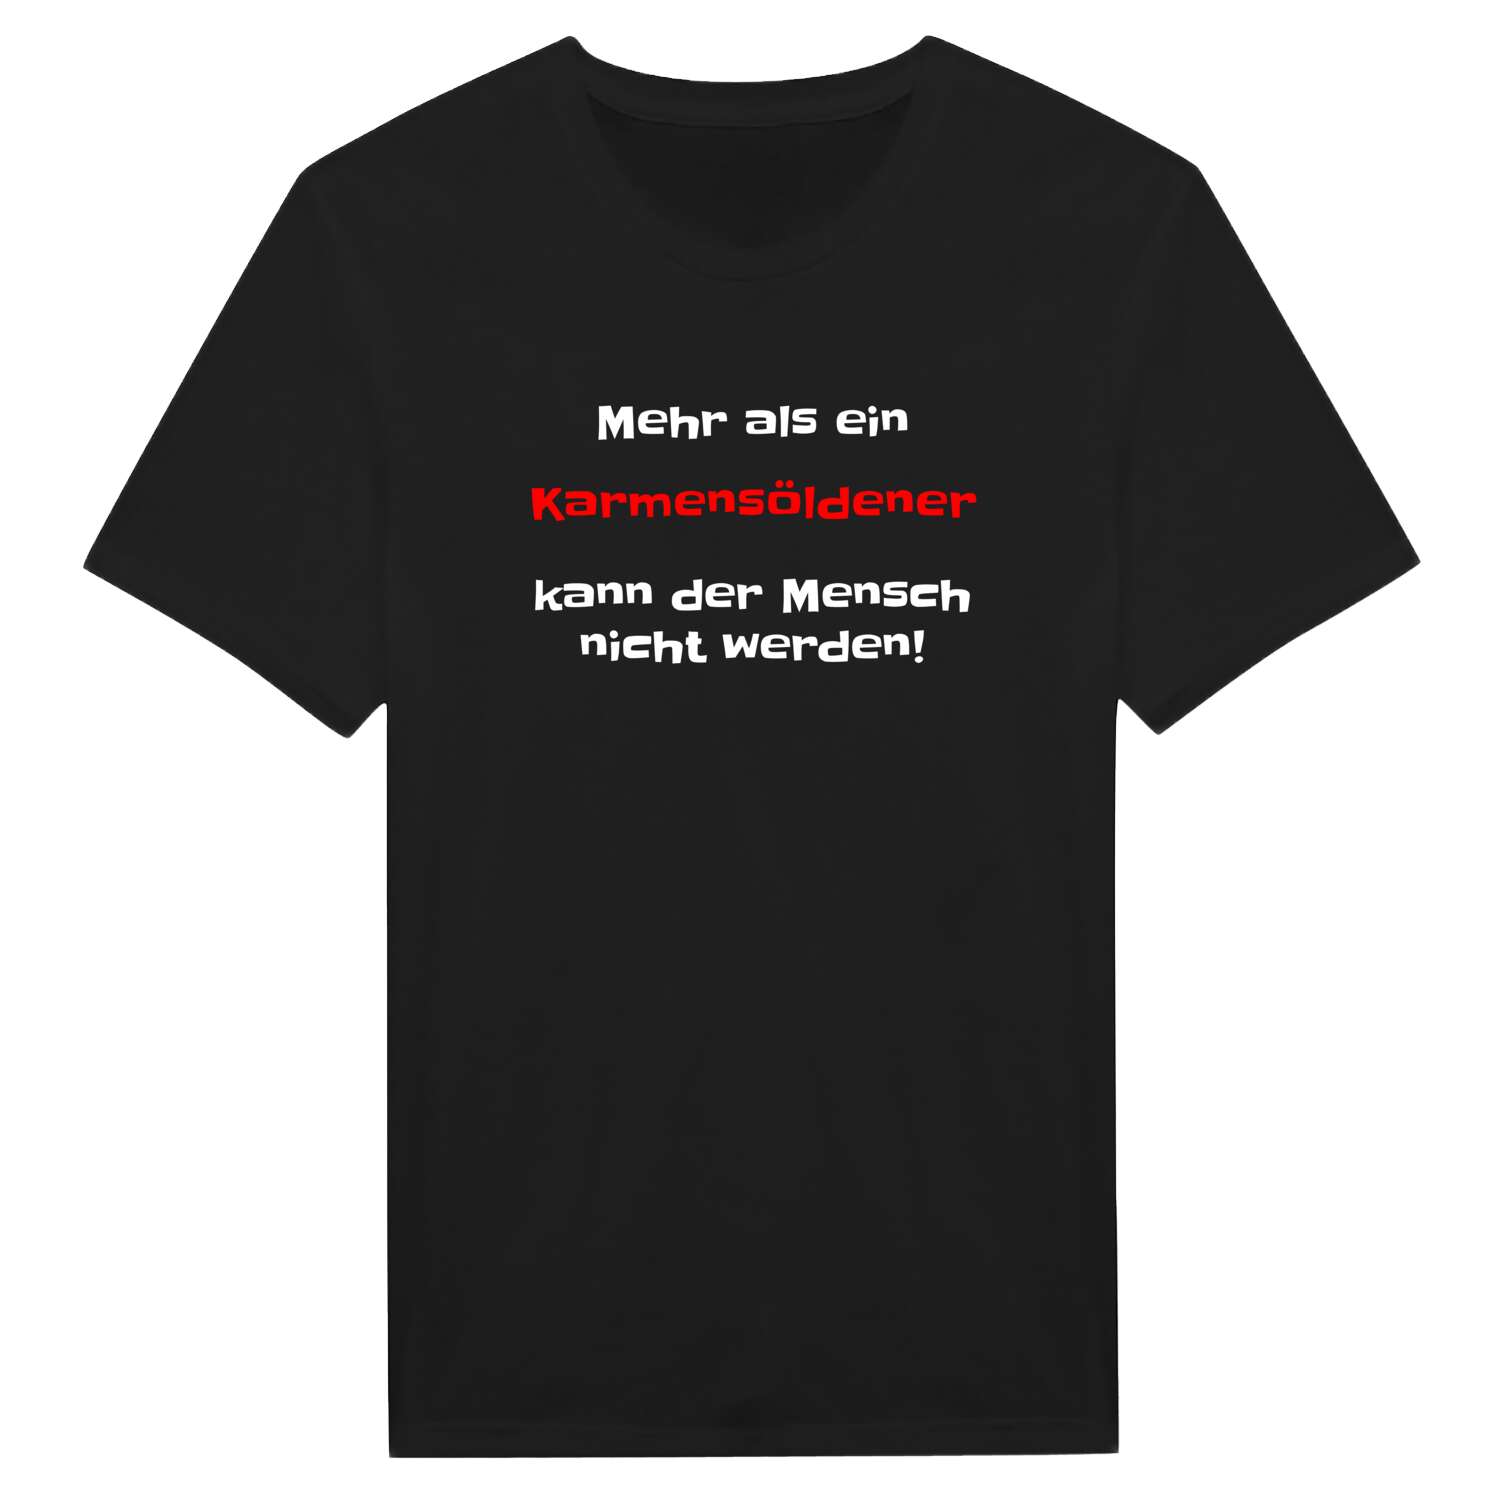 Karmensölden T-Shirt »Mehr als ein«